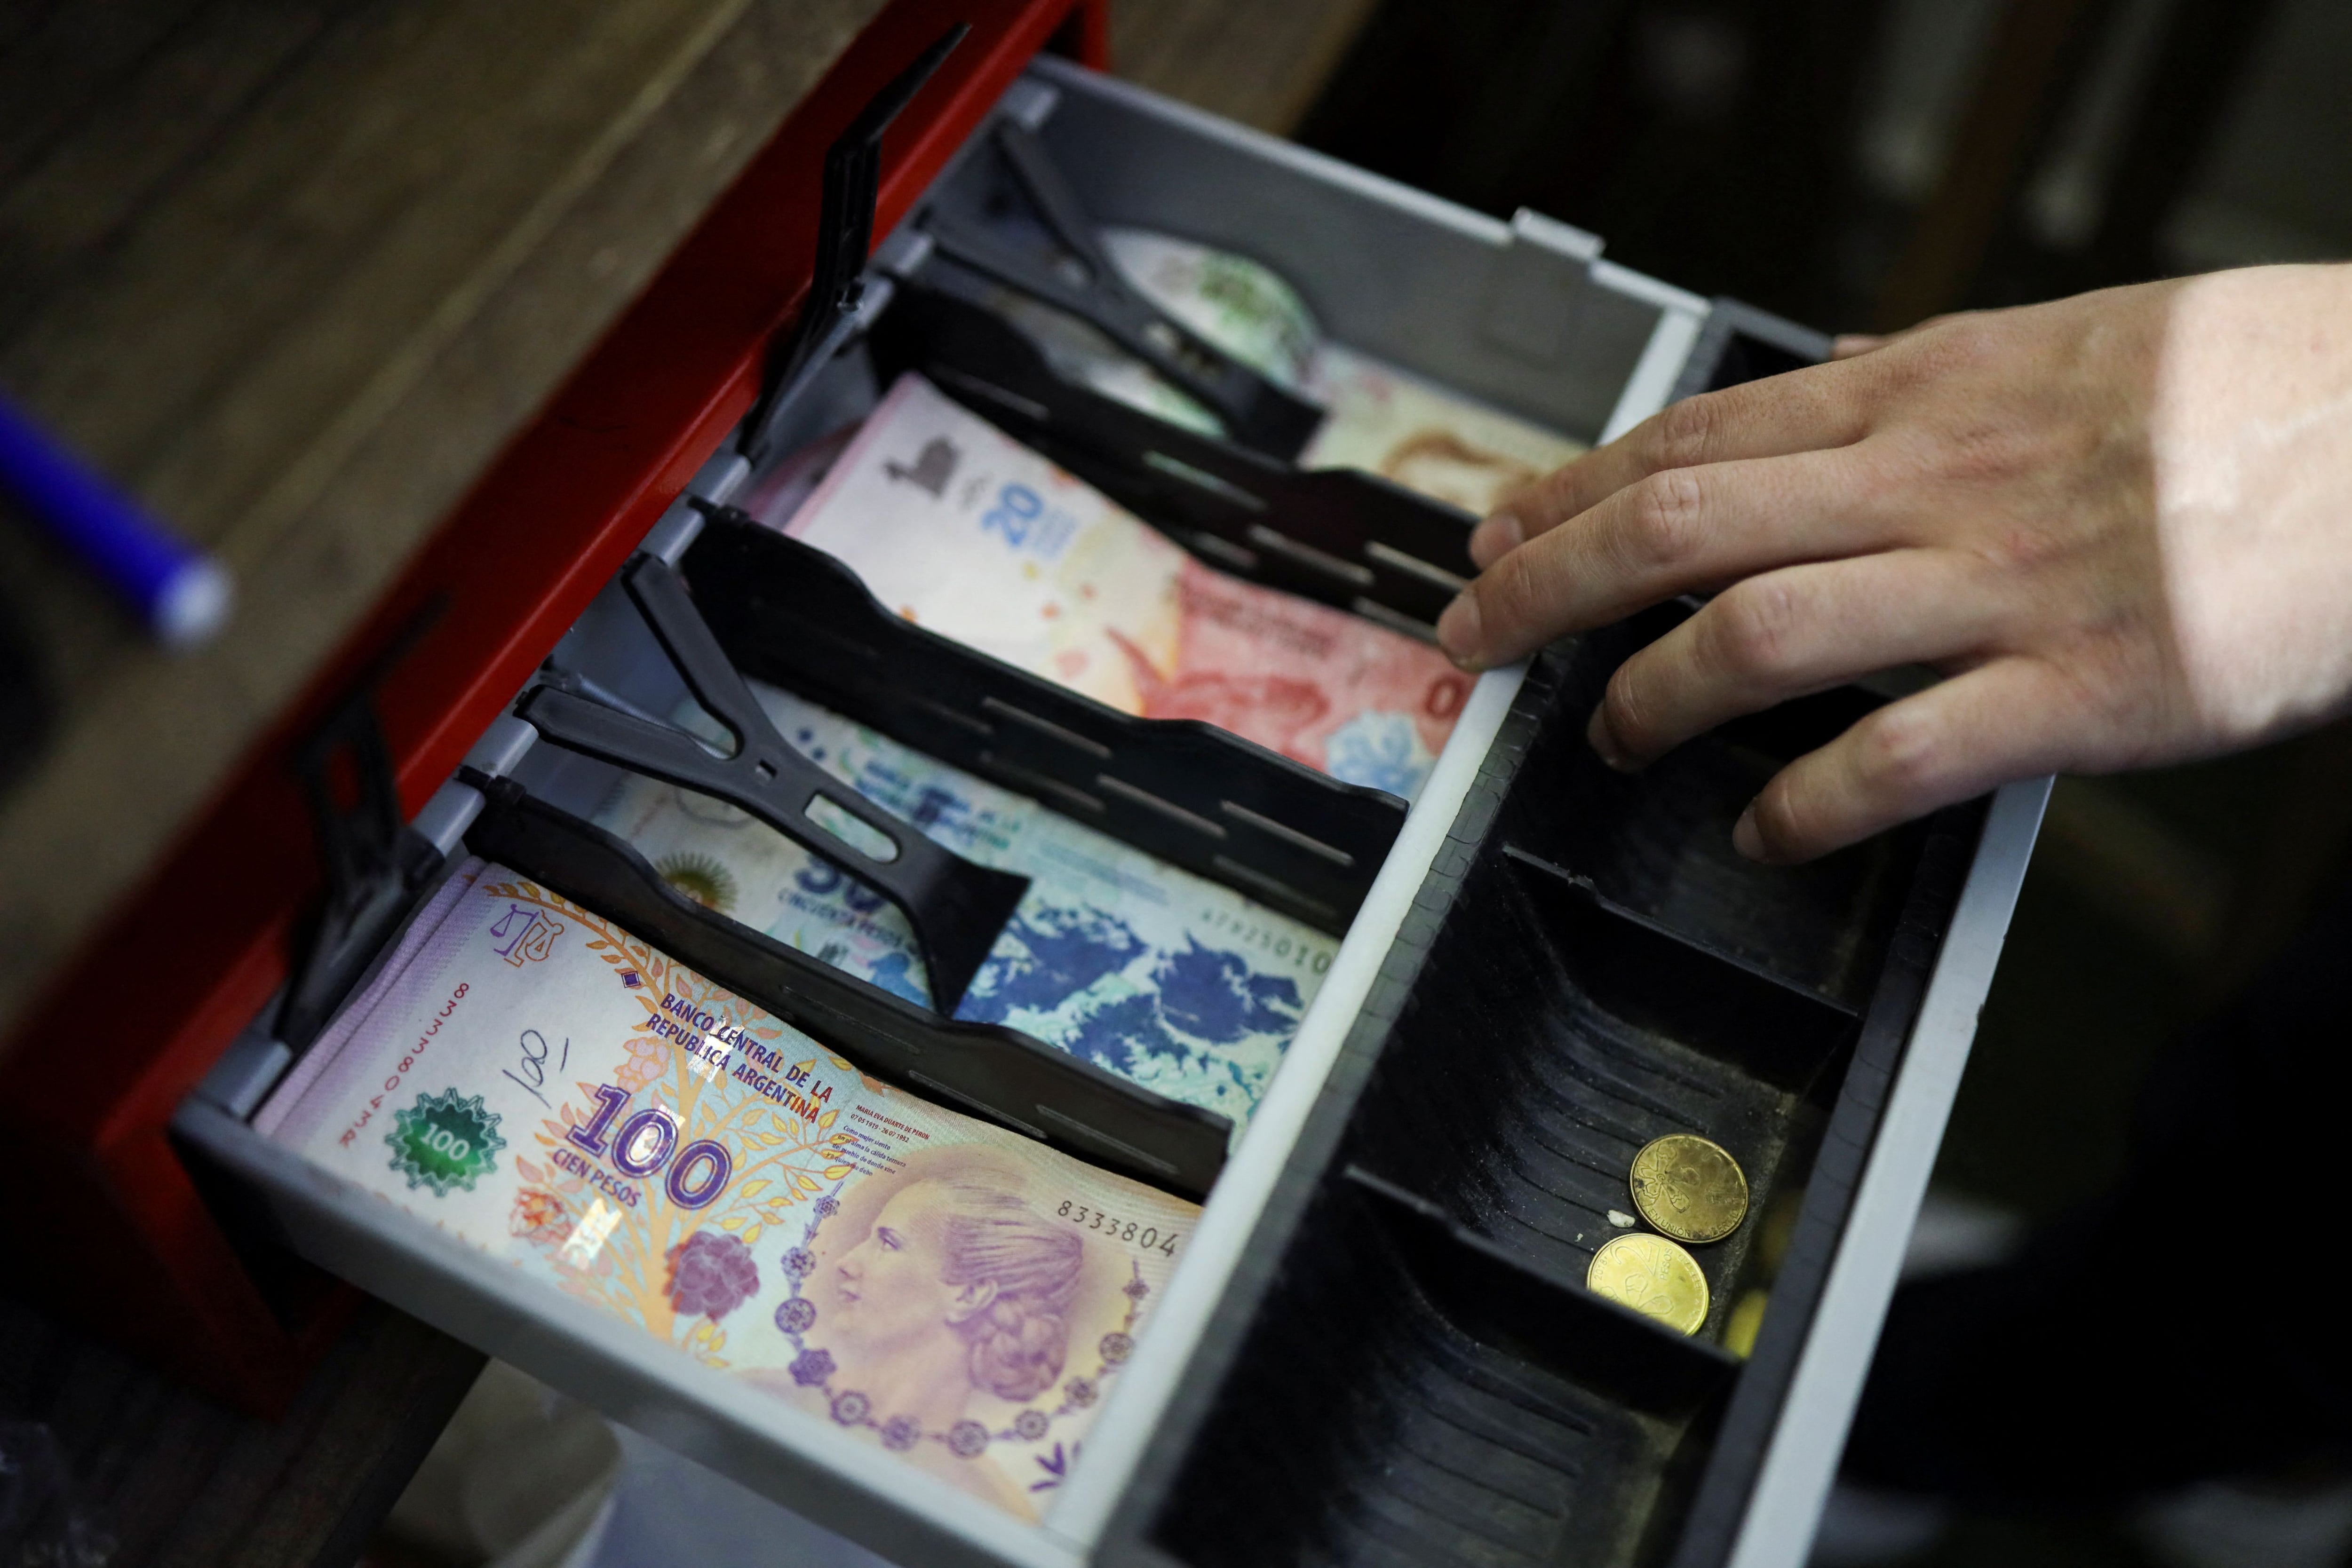 Ladrones profesionales que sabían lo que buscaban, solo cosas de valor, no les interesaron los pesos (REUTERS/Cristina Sille)